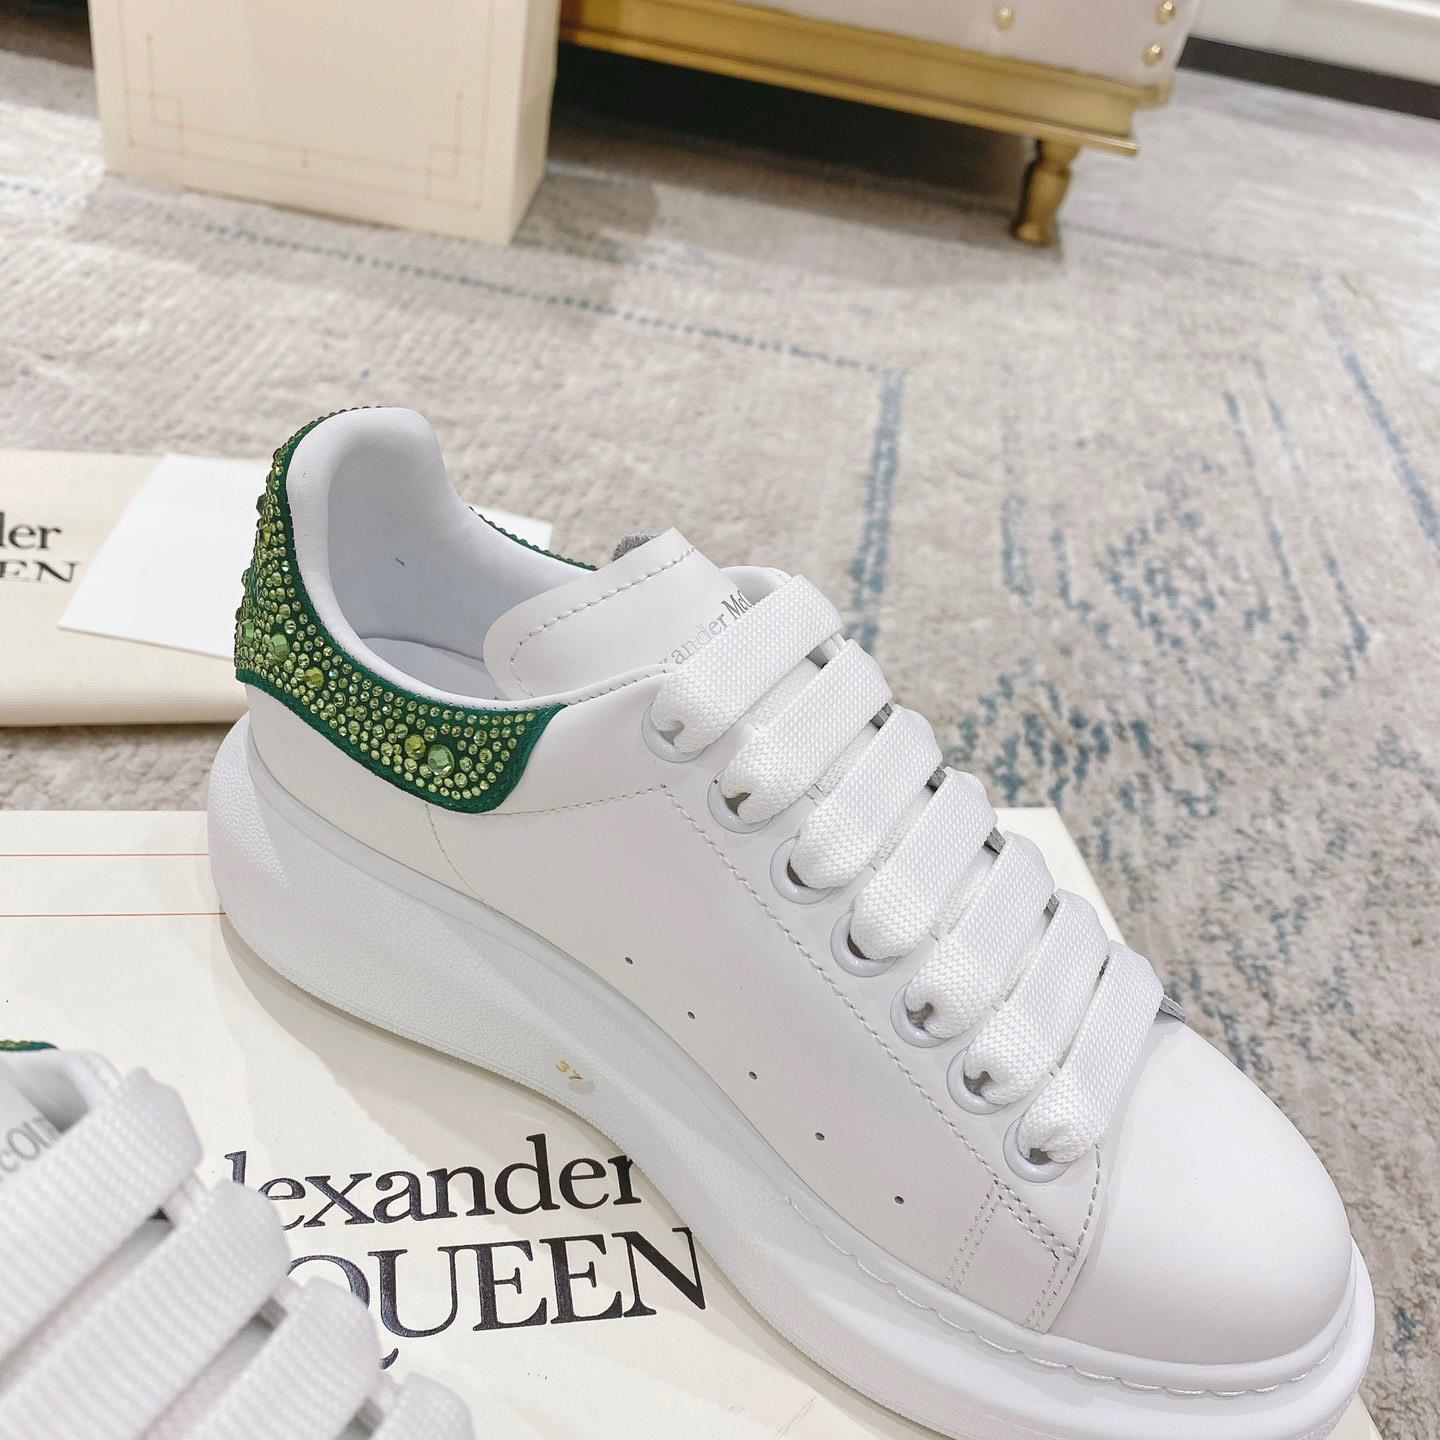 Alexander Mqueen Oversized Sneaker in White/Acid Green - DesignerGu